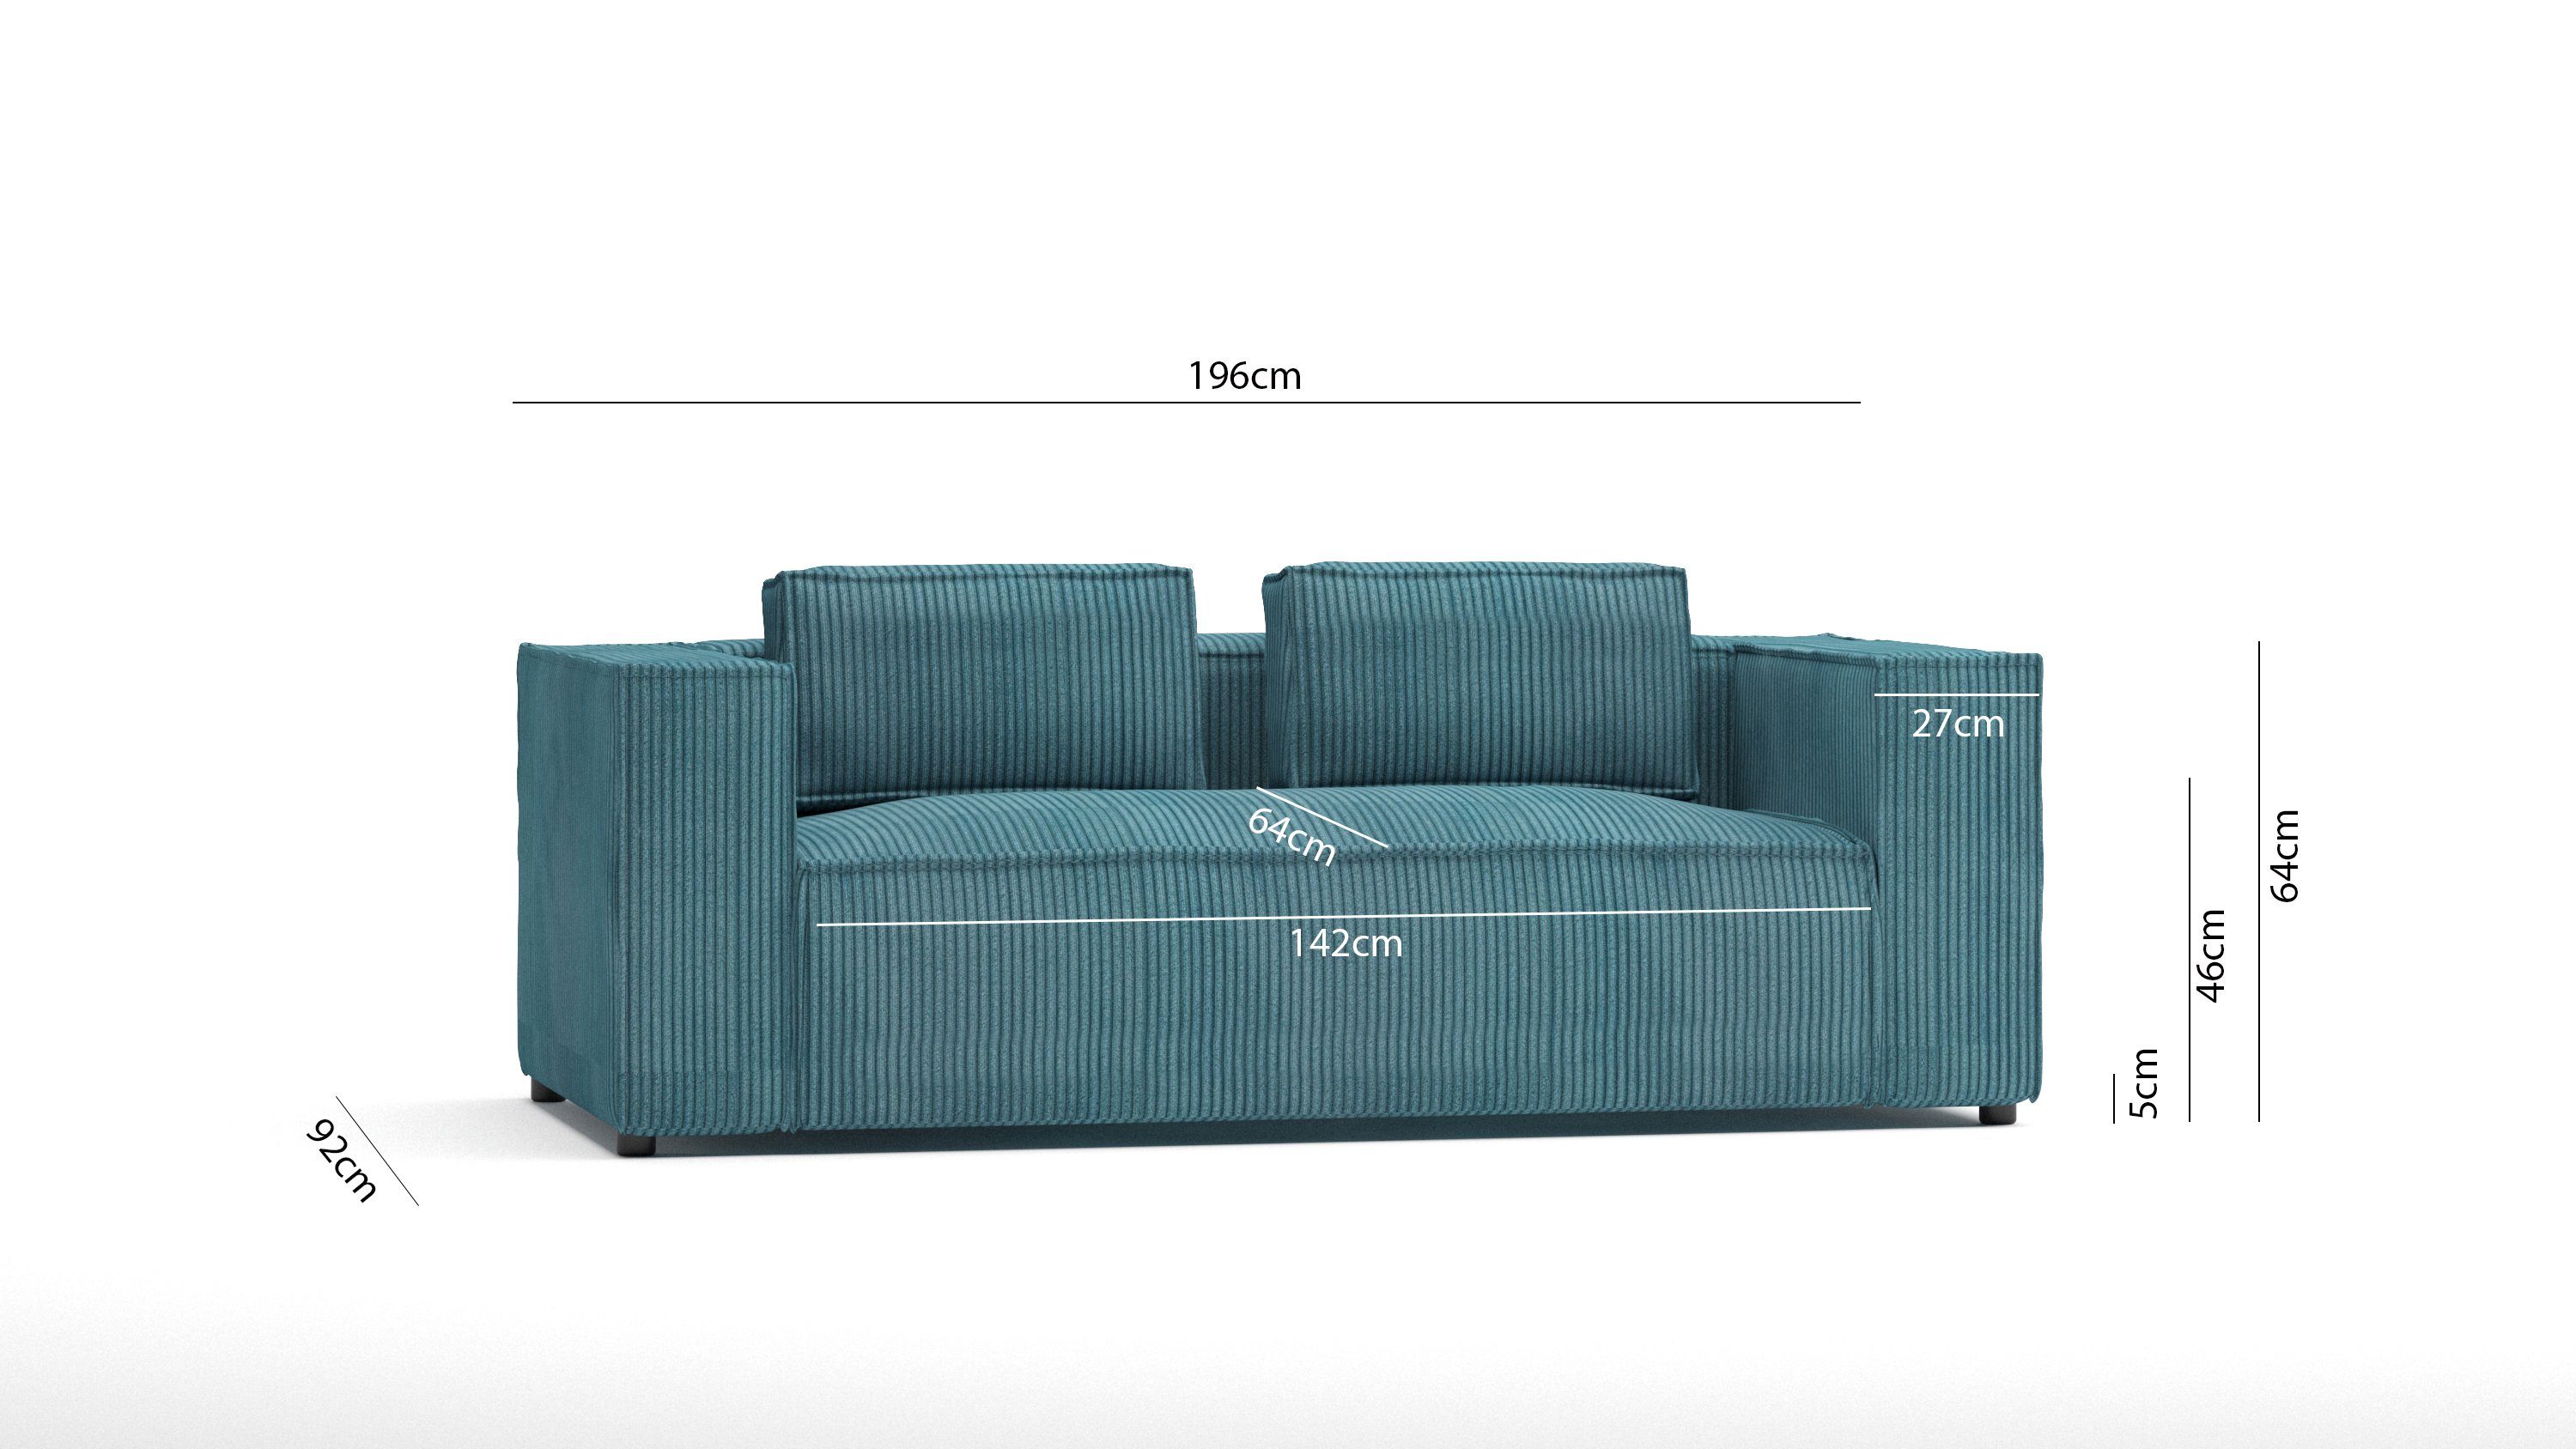 S-Style Sofa Teile, Türkis 2-Sitzer Cord Möbel 1 mit Wellenfederung Renne,